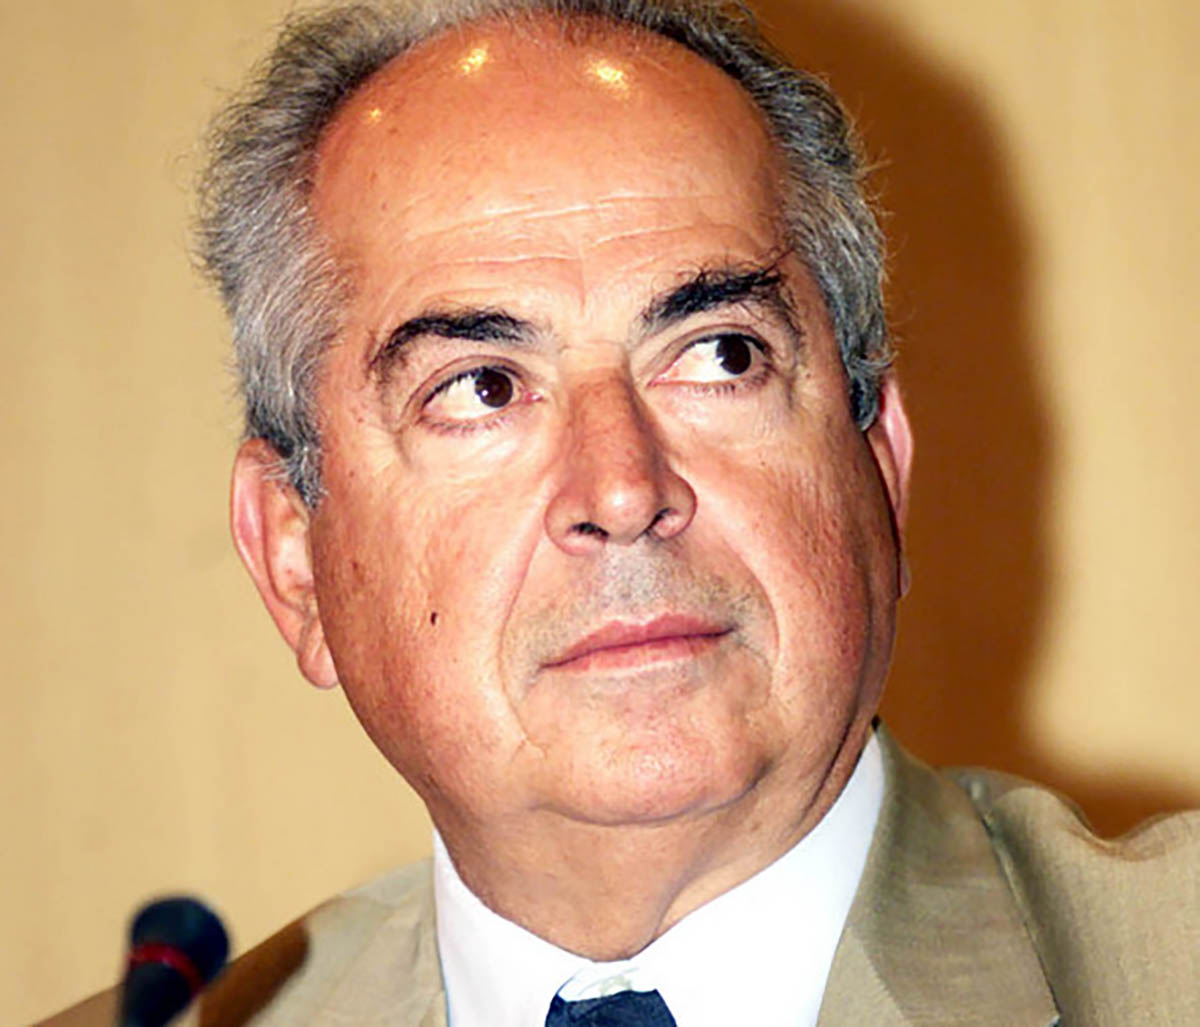 Πέθανε ο Δημήτρης Αποστολάκης – Πρώην υφυπουργός Άμυνας και στενός συνεργάτης του Ανδρέα Παπανδρέου